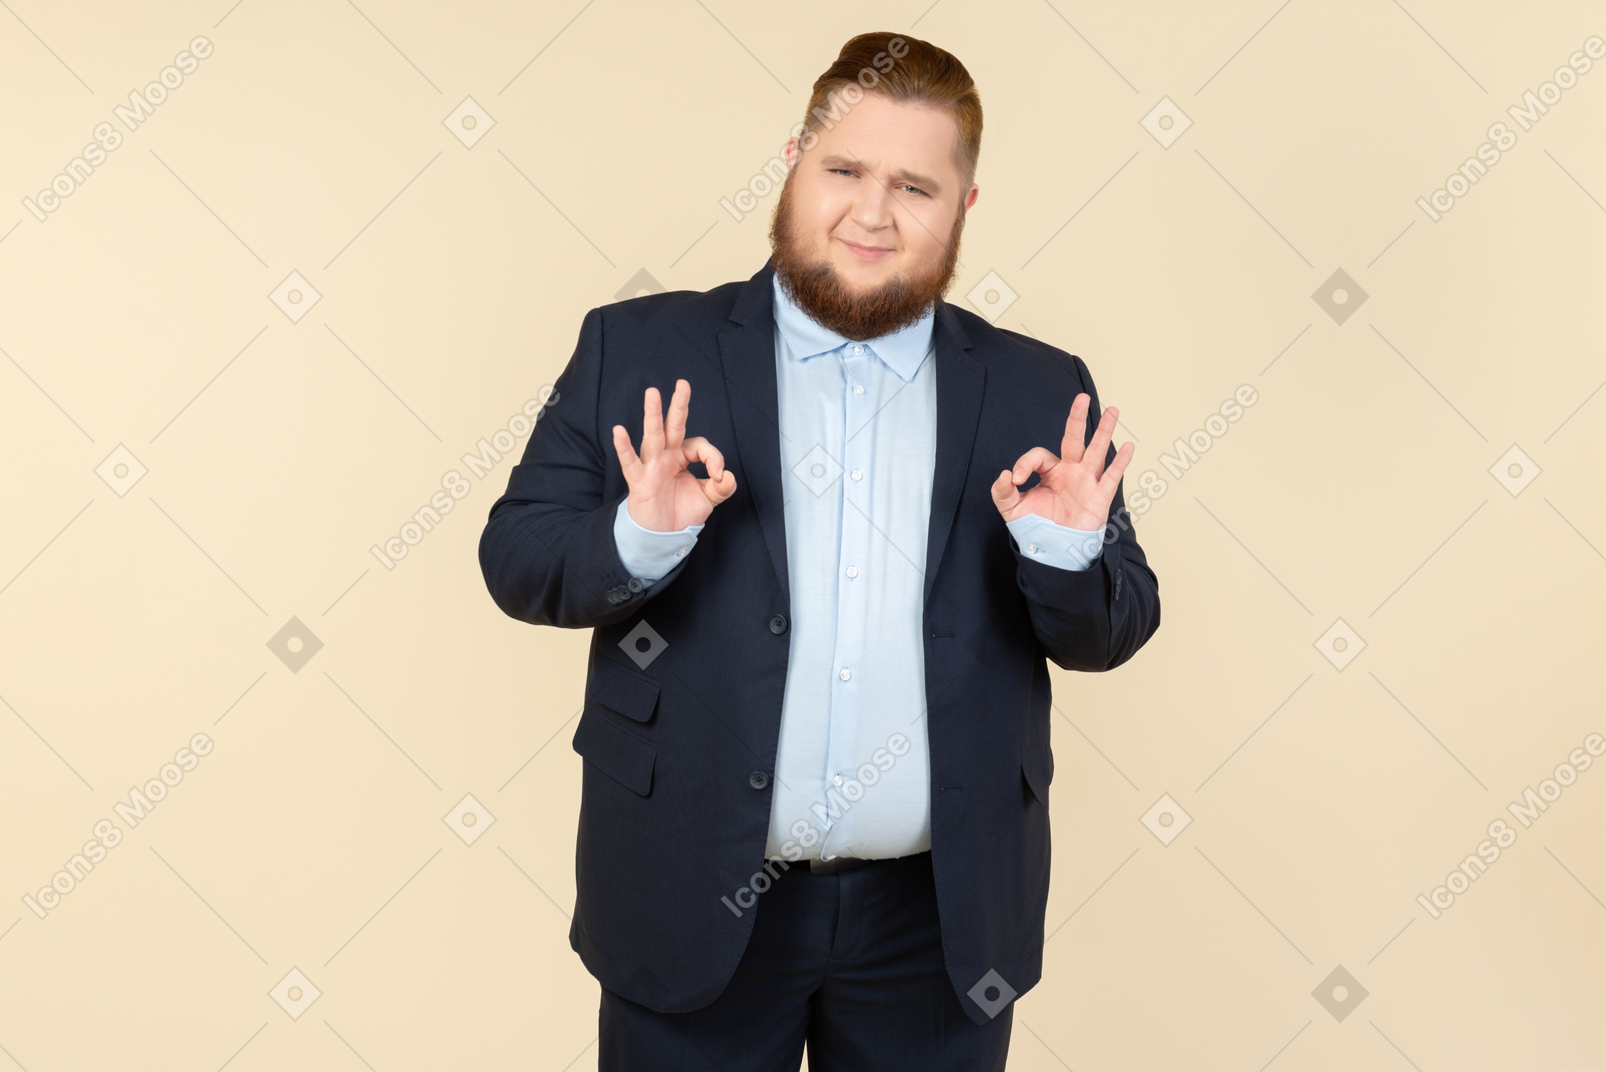 Junger übergewichtiger mann im anzug, der okaygeste mit beiden händen zeigt